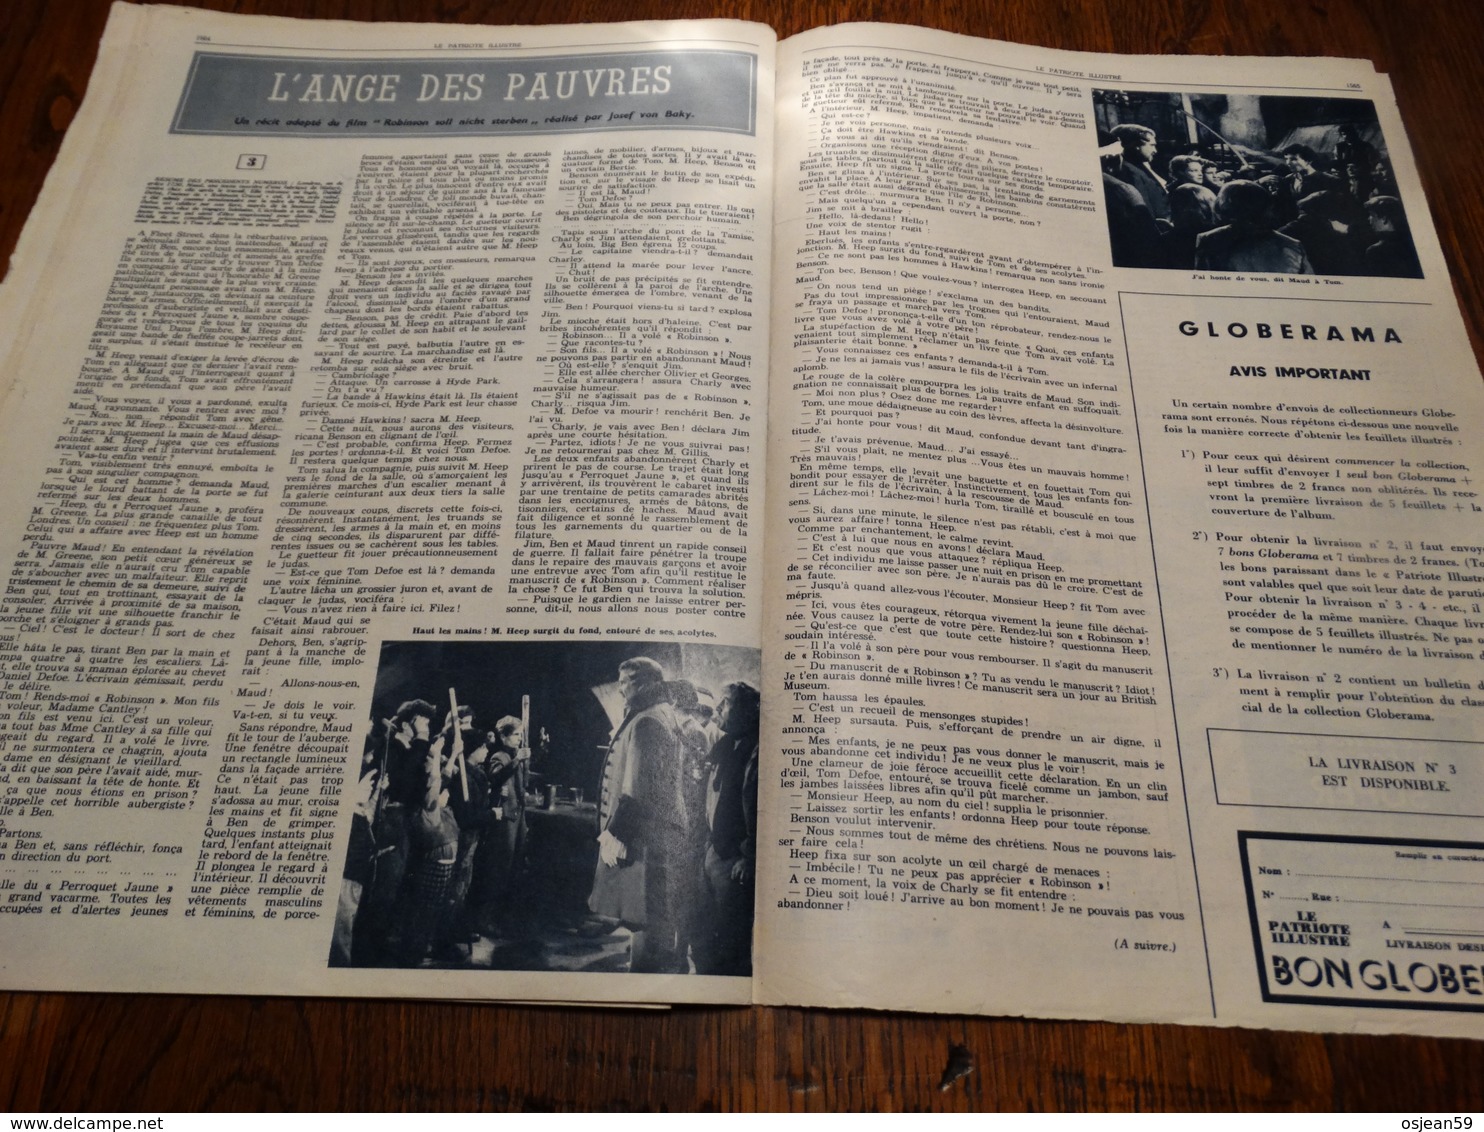 Le patriote illustré N° 39 du 29/09/1957.Expo 58,art et histoire des timbres-postes,Marie-Henriette Reine